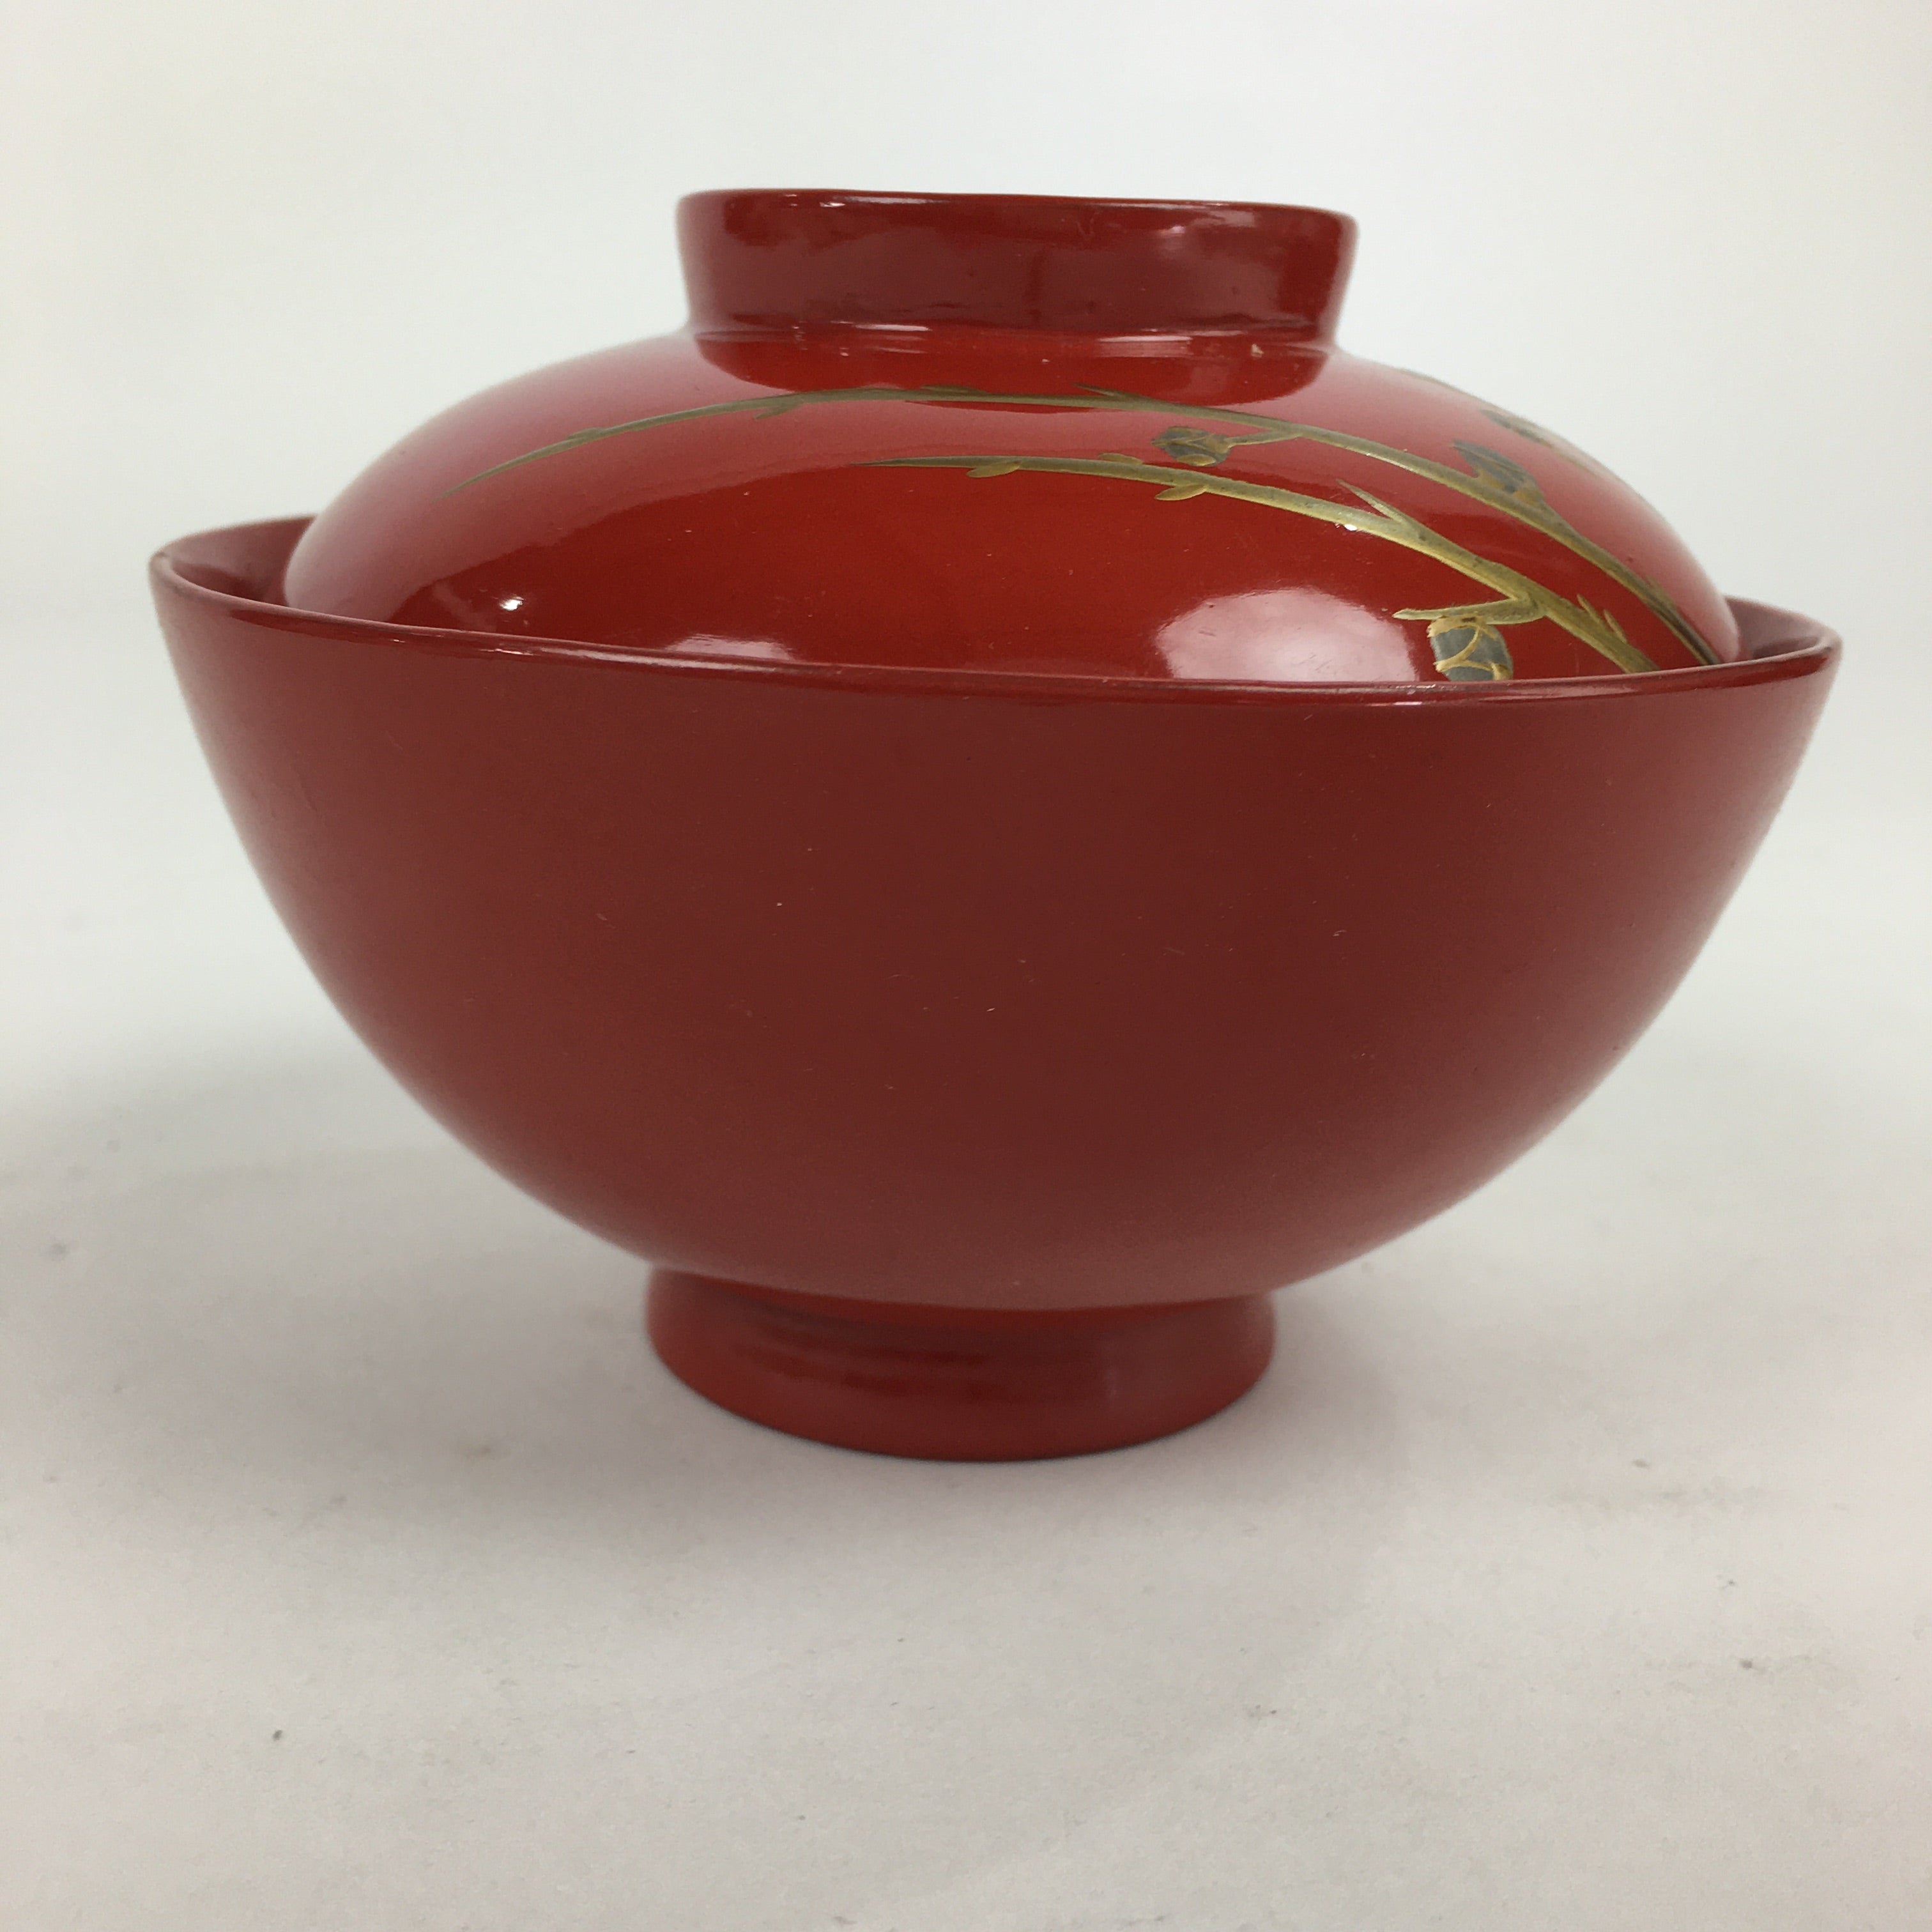 Japanese Lacquerware Lidded Bowl Vtg Maki-e Gold Owan Soup Bowl Red UR650